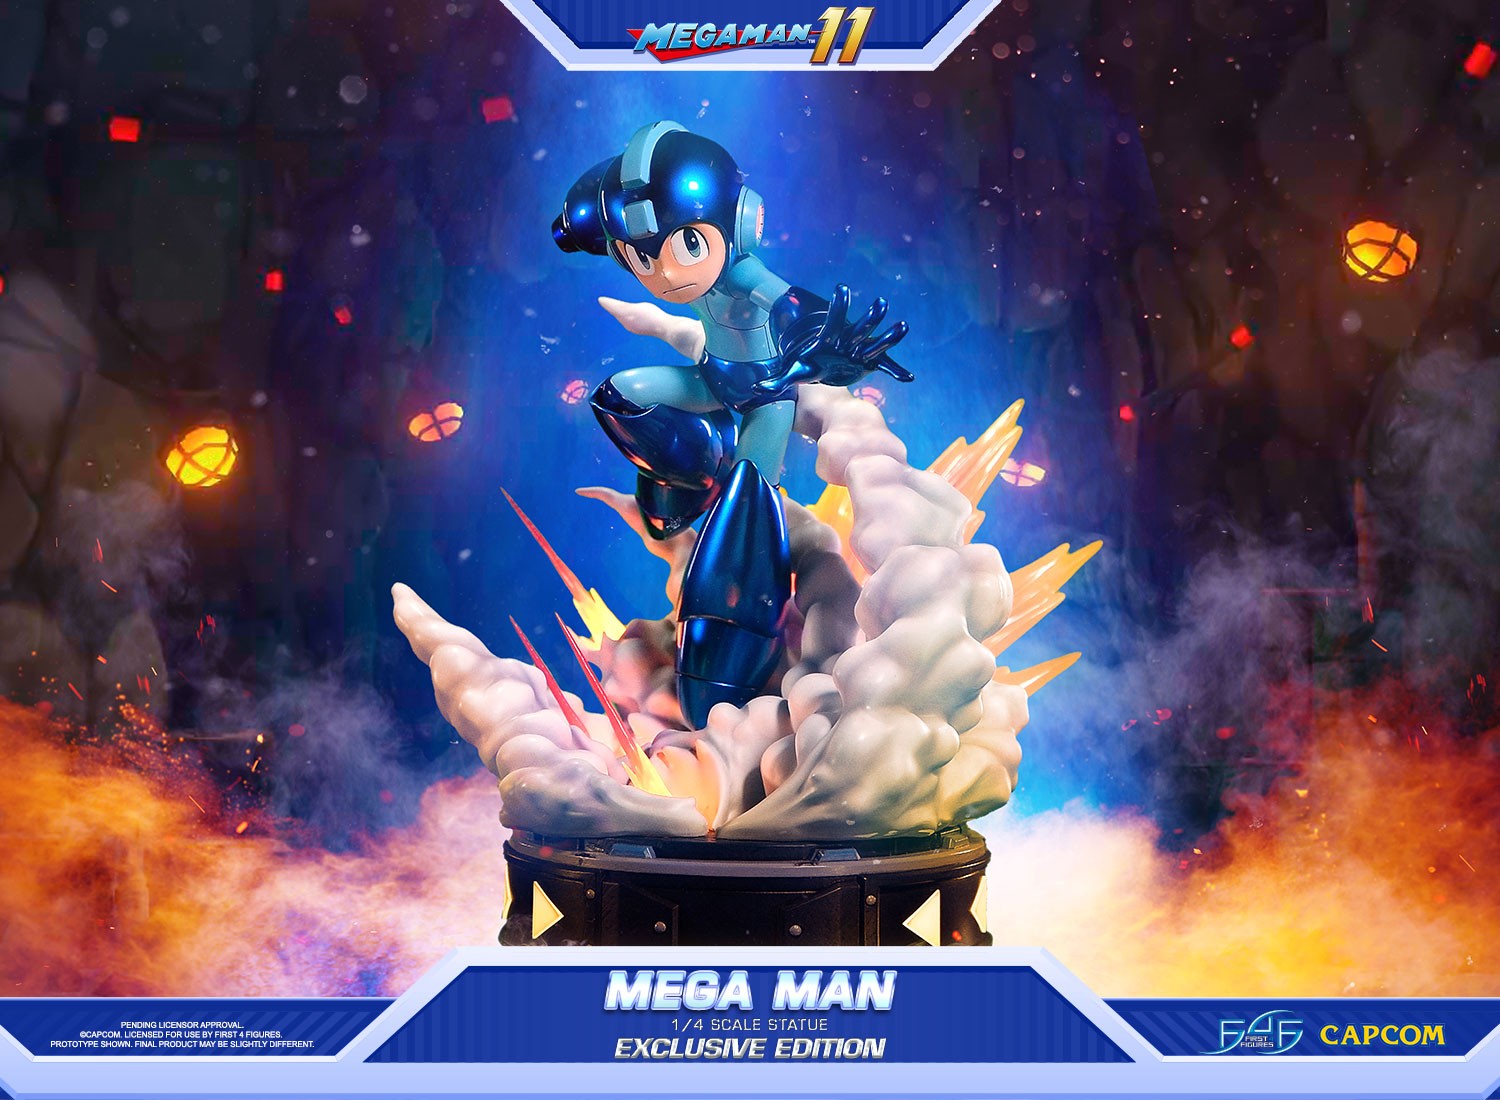 Mega Man 11 - Mega Man (Exclusive Edition)